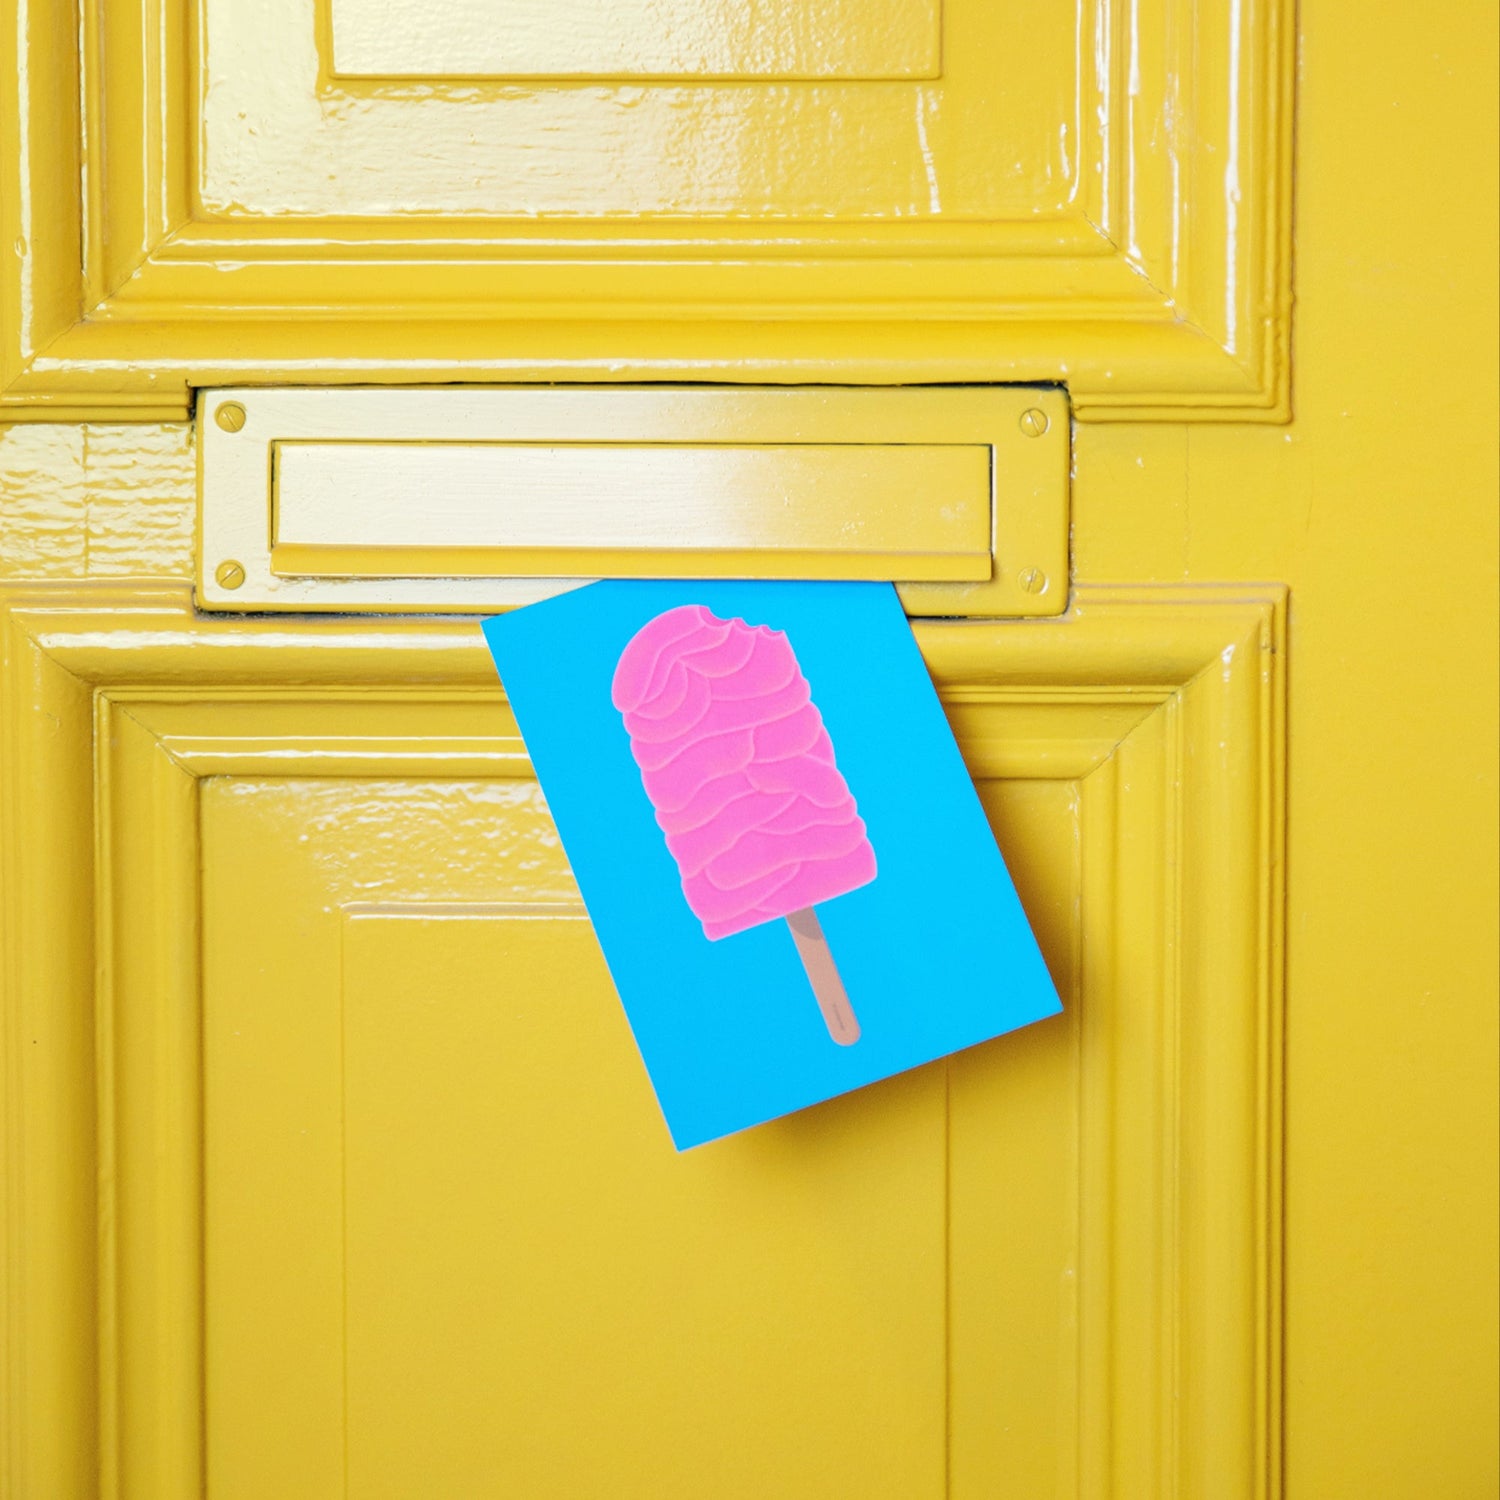 Postkarte »Brainsicle« steckt im Briefschlitz einer gelben Wohnungstür